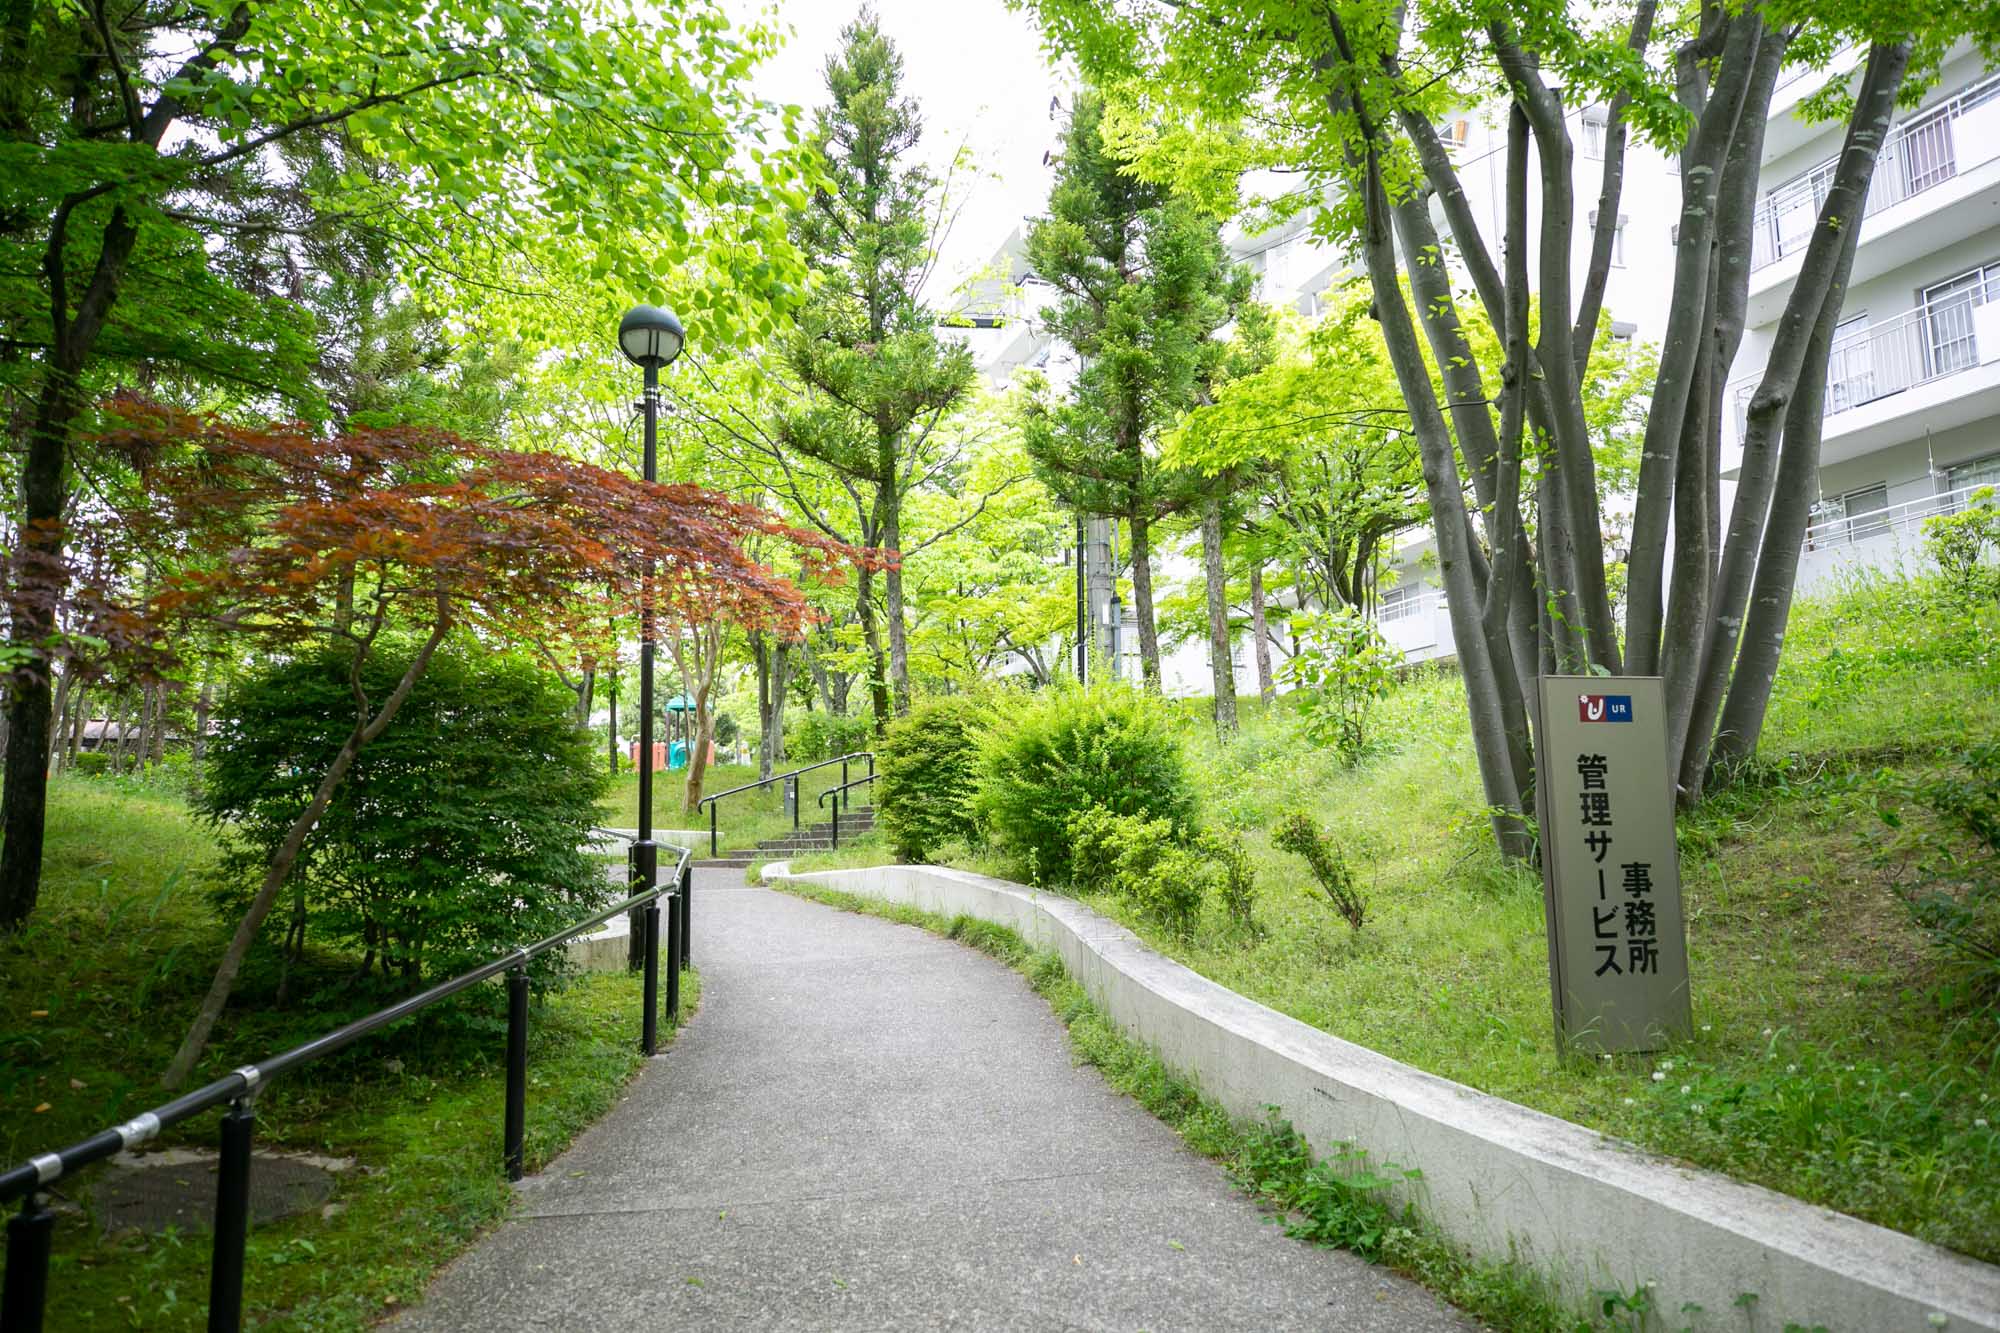 平城右京団地の敷地内は、歩車分離がされていて、綺麗に整備された緑豊かな遊歩道が連なっています。小さなお子さんとも安心して歩けそうですね。